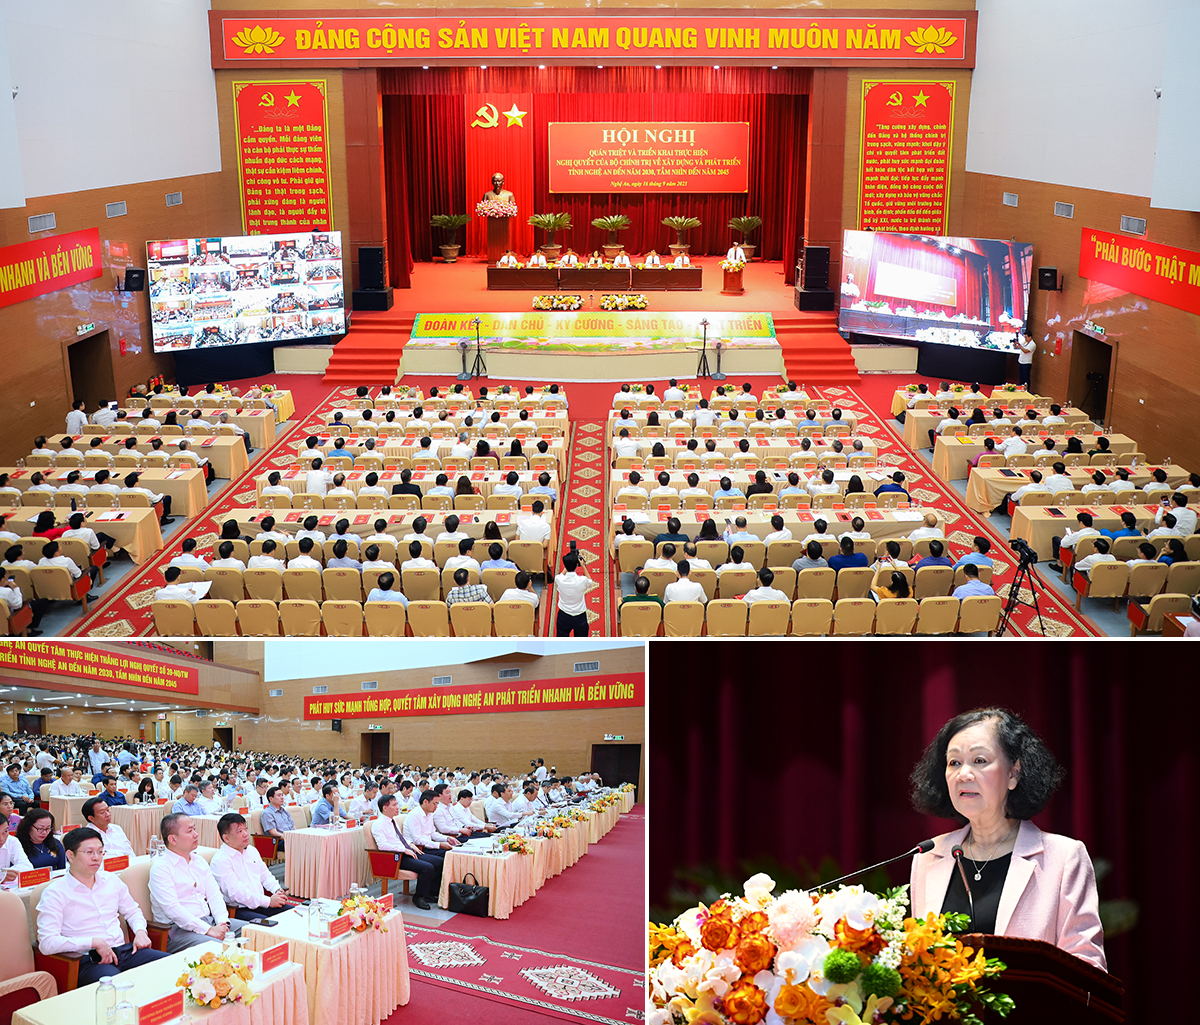 Hội nghị quán triệt, triển khai Nghị quyết số 39 của Bộ Chính trị về xây dựng và phát triển tỉnh Nghệ An đến năm 2030, tầm nhìn đến năm 2045. Ảnh: Cường - Duy